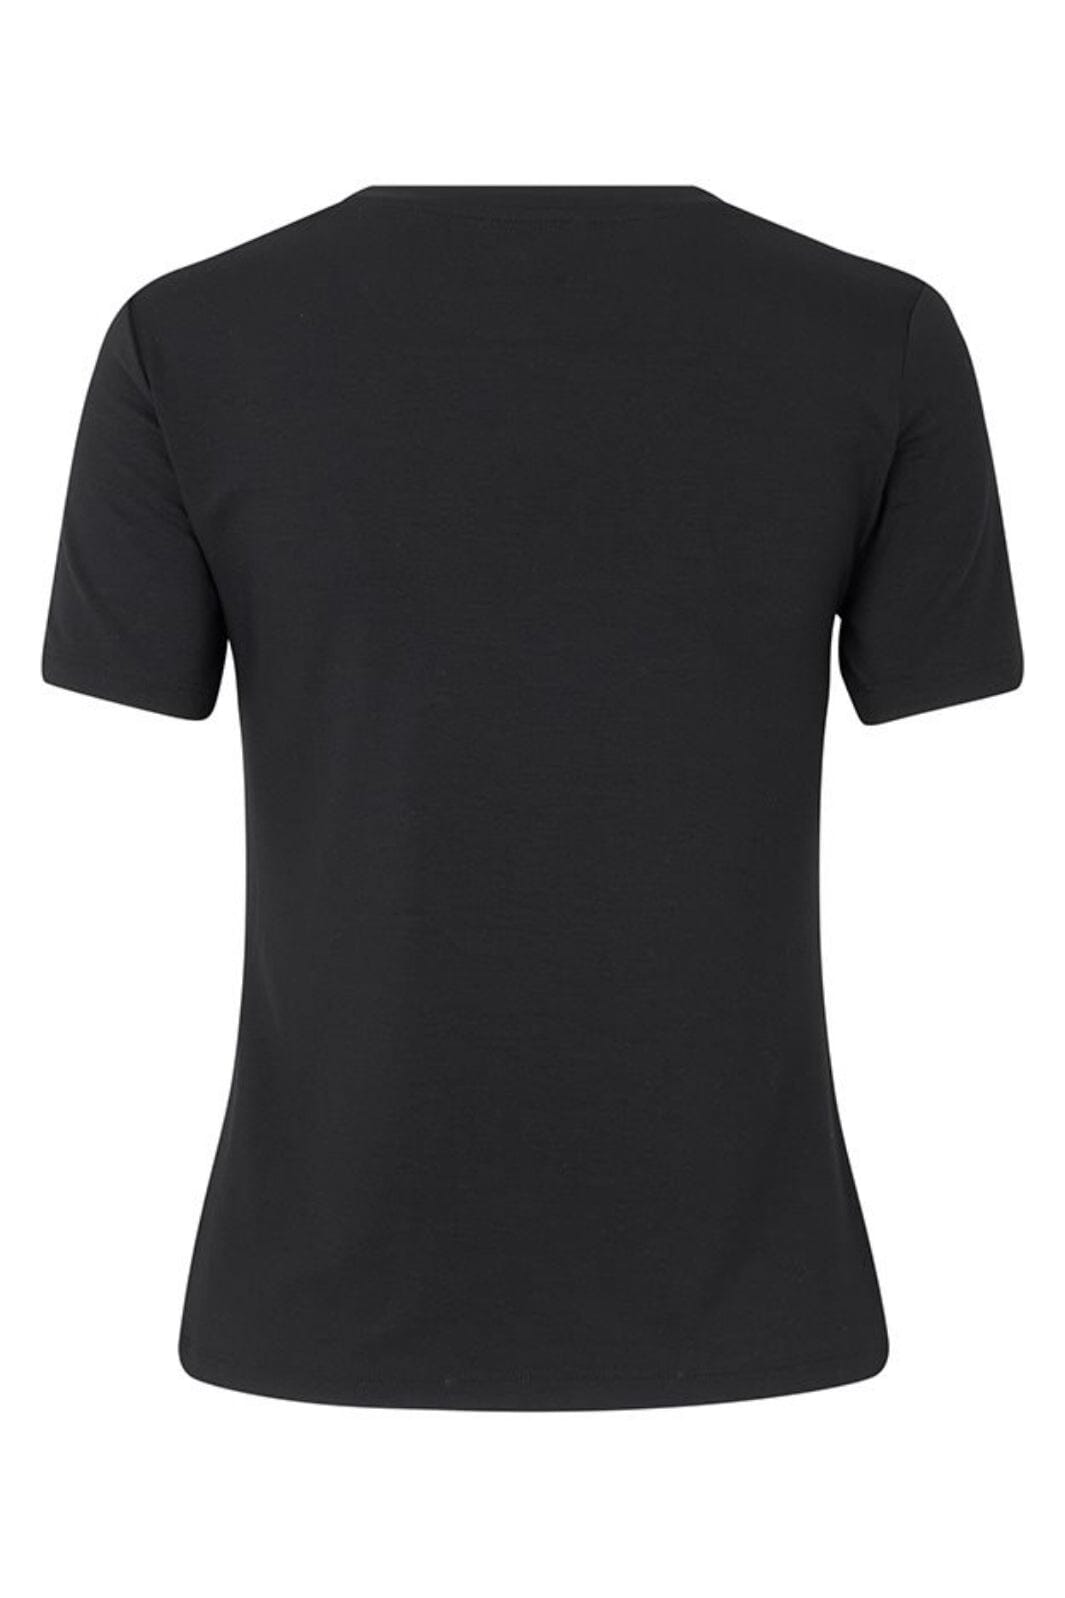 MbyM - Julie-M - Black T-shirts 